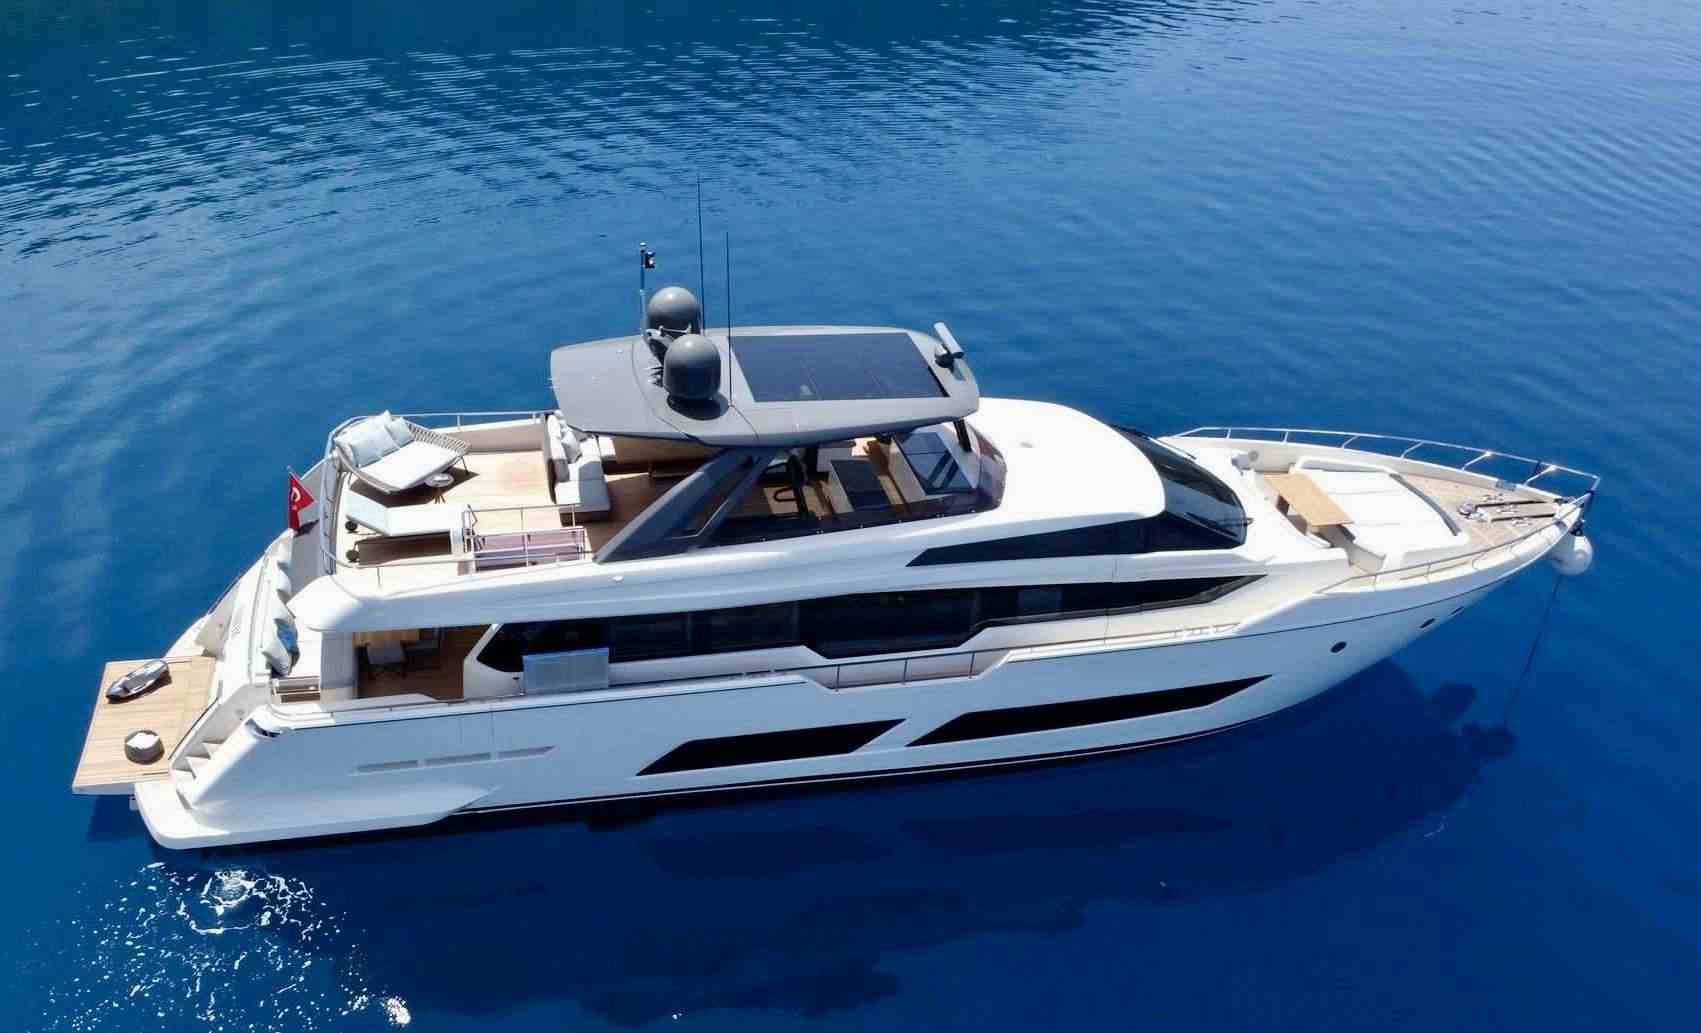 SHERO - Motor Boat Charter Greece & Boat hire in Greece & Turkey 1